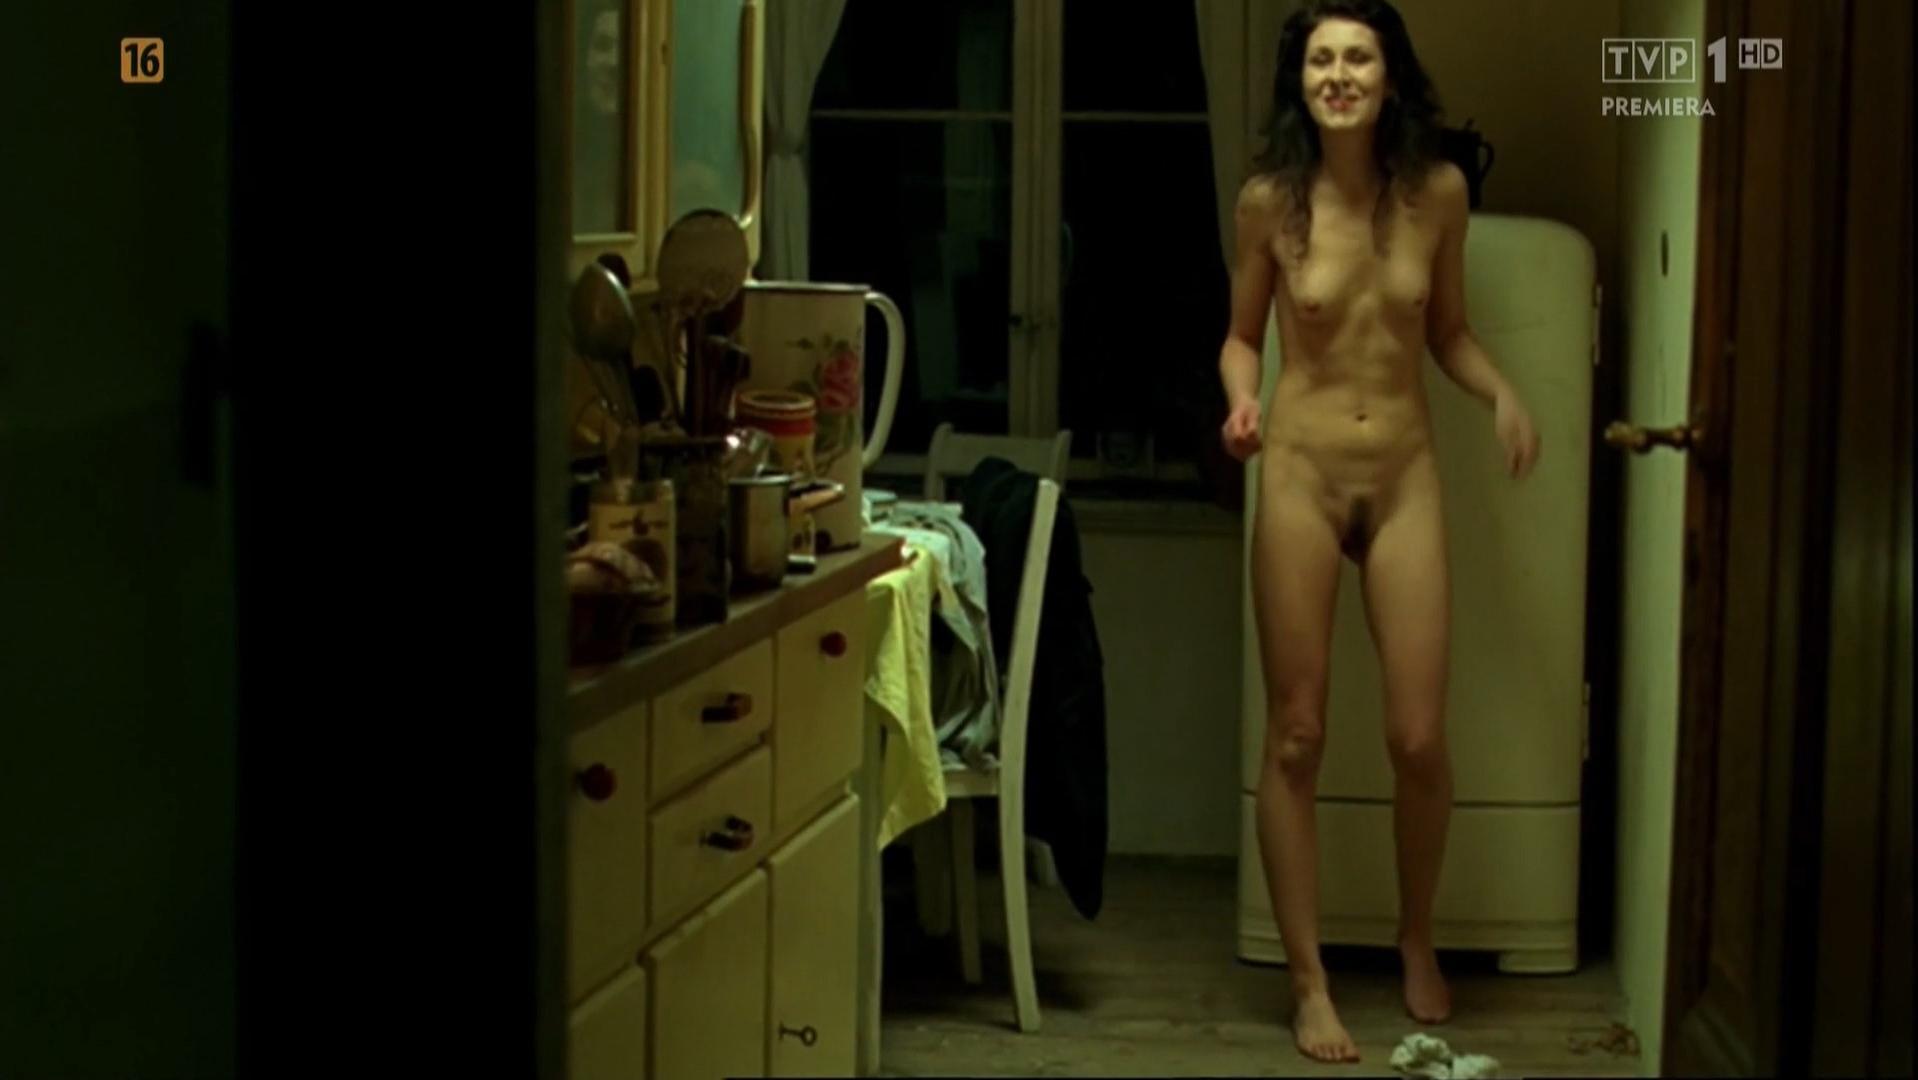 Nude Video Celebs Agnieszka Grochowska Nude Monika Radziwon Nude Nie Opuszczaj Mnie 2009